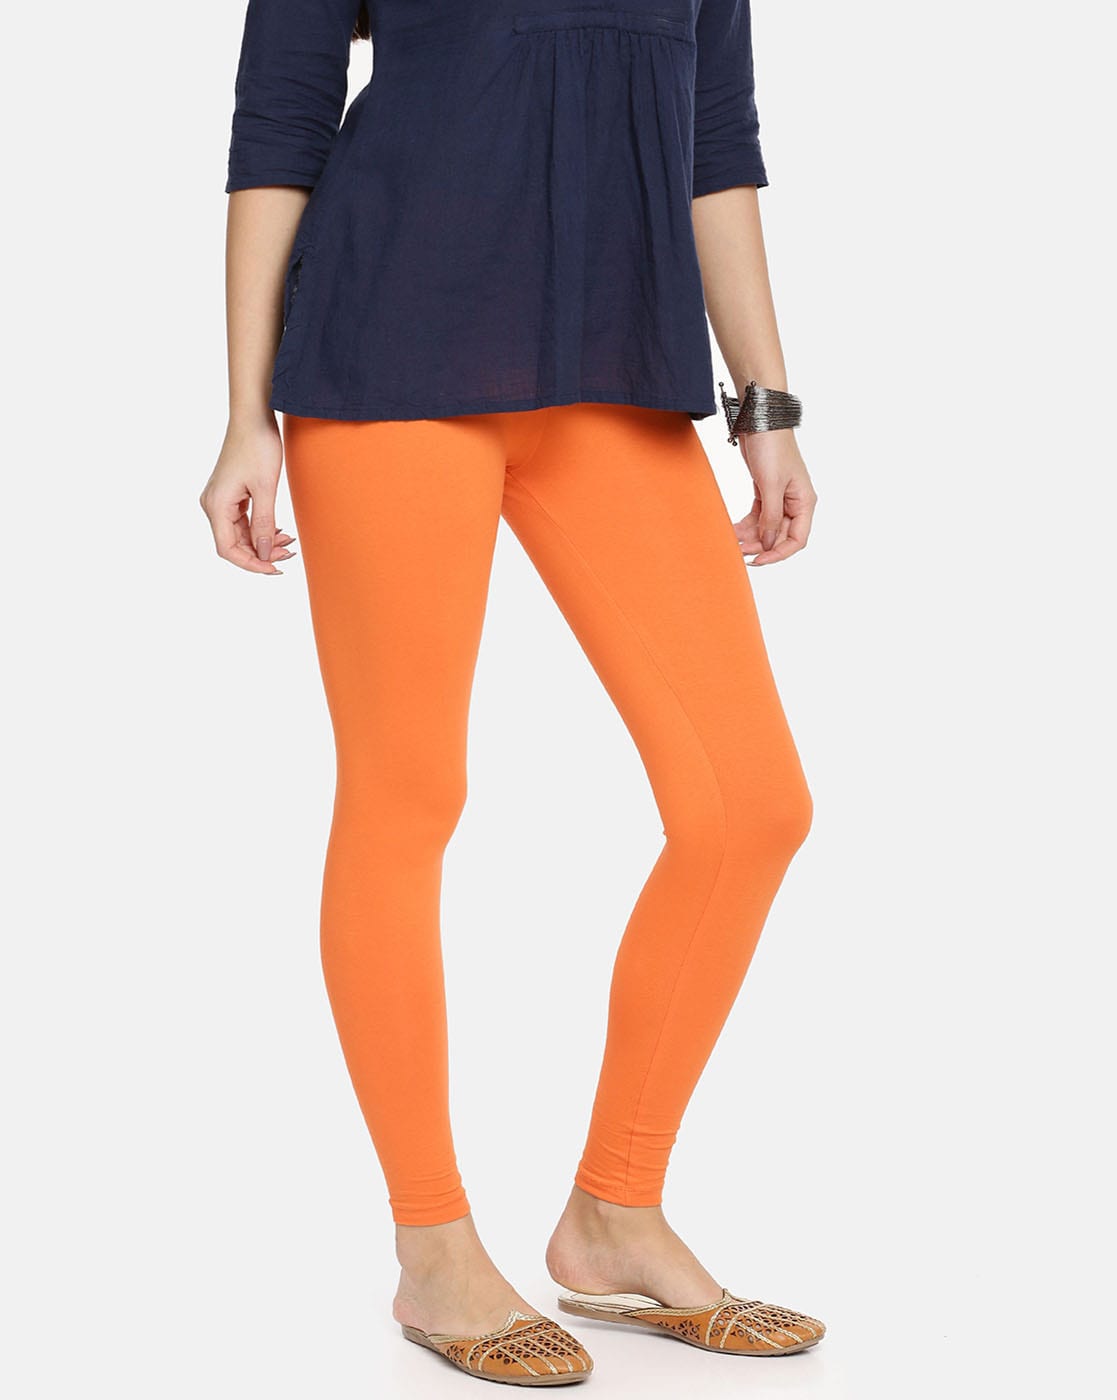 Buy TwinBirds Women's Leggings (Light Orange_X-Large) at